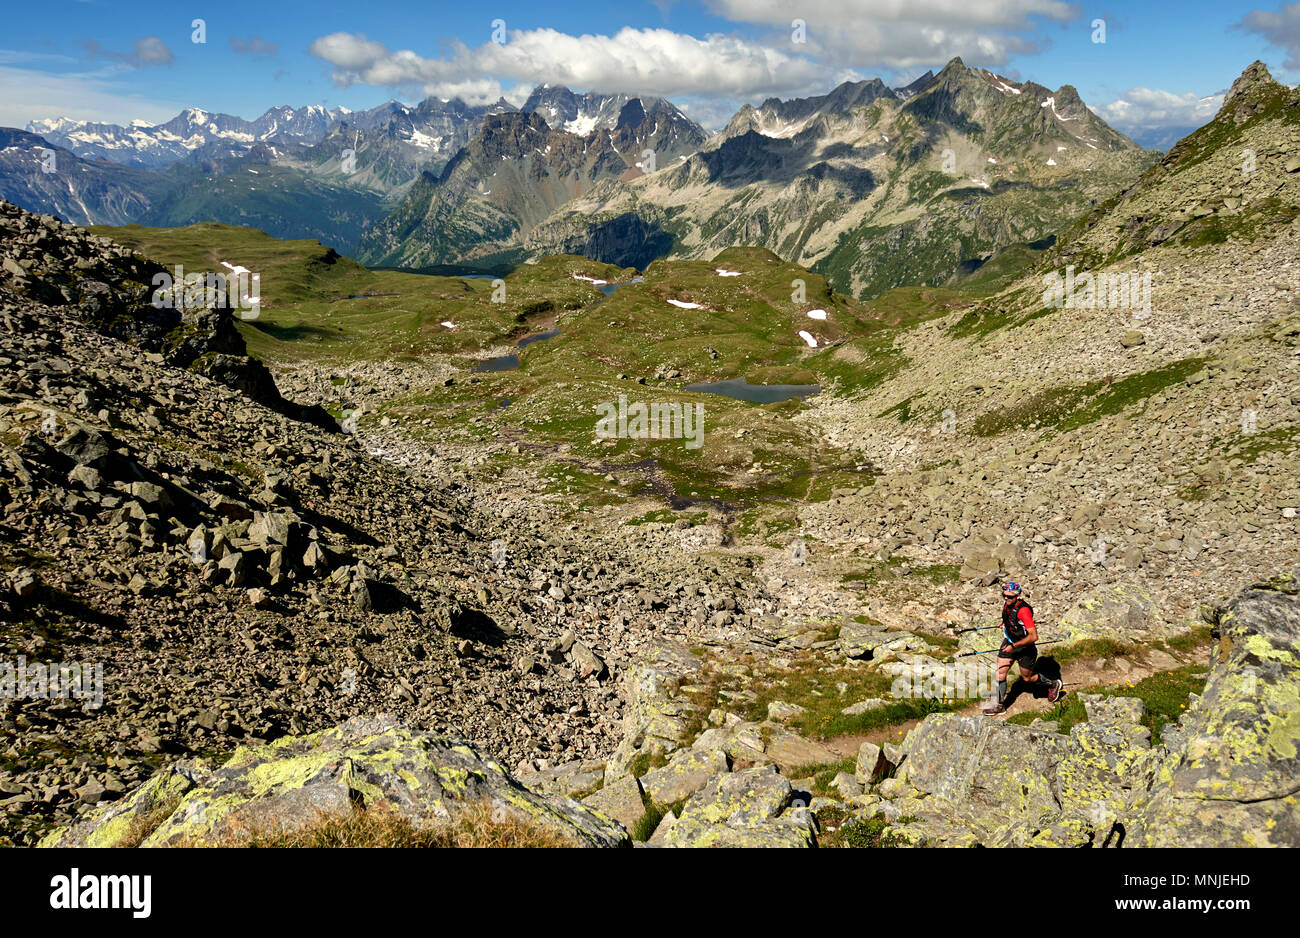 High angle view of Trail Runner marche sur des collines stériles Alpe Devero, Verbania, Italie Banque D'Images